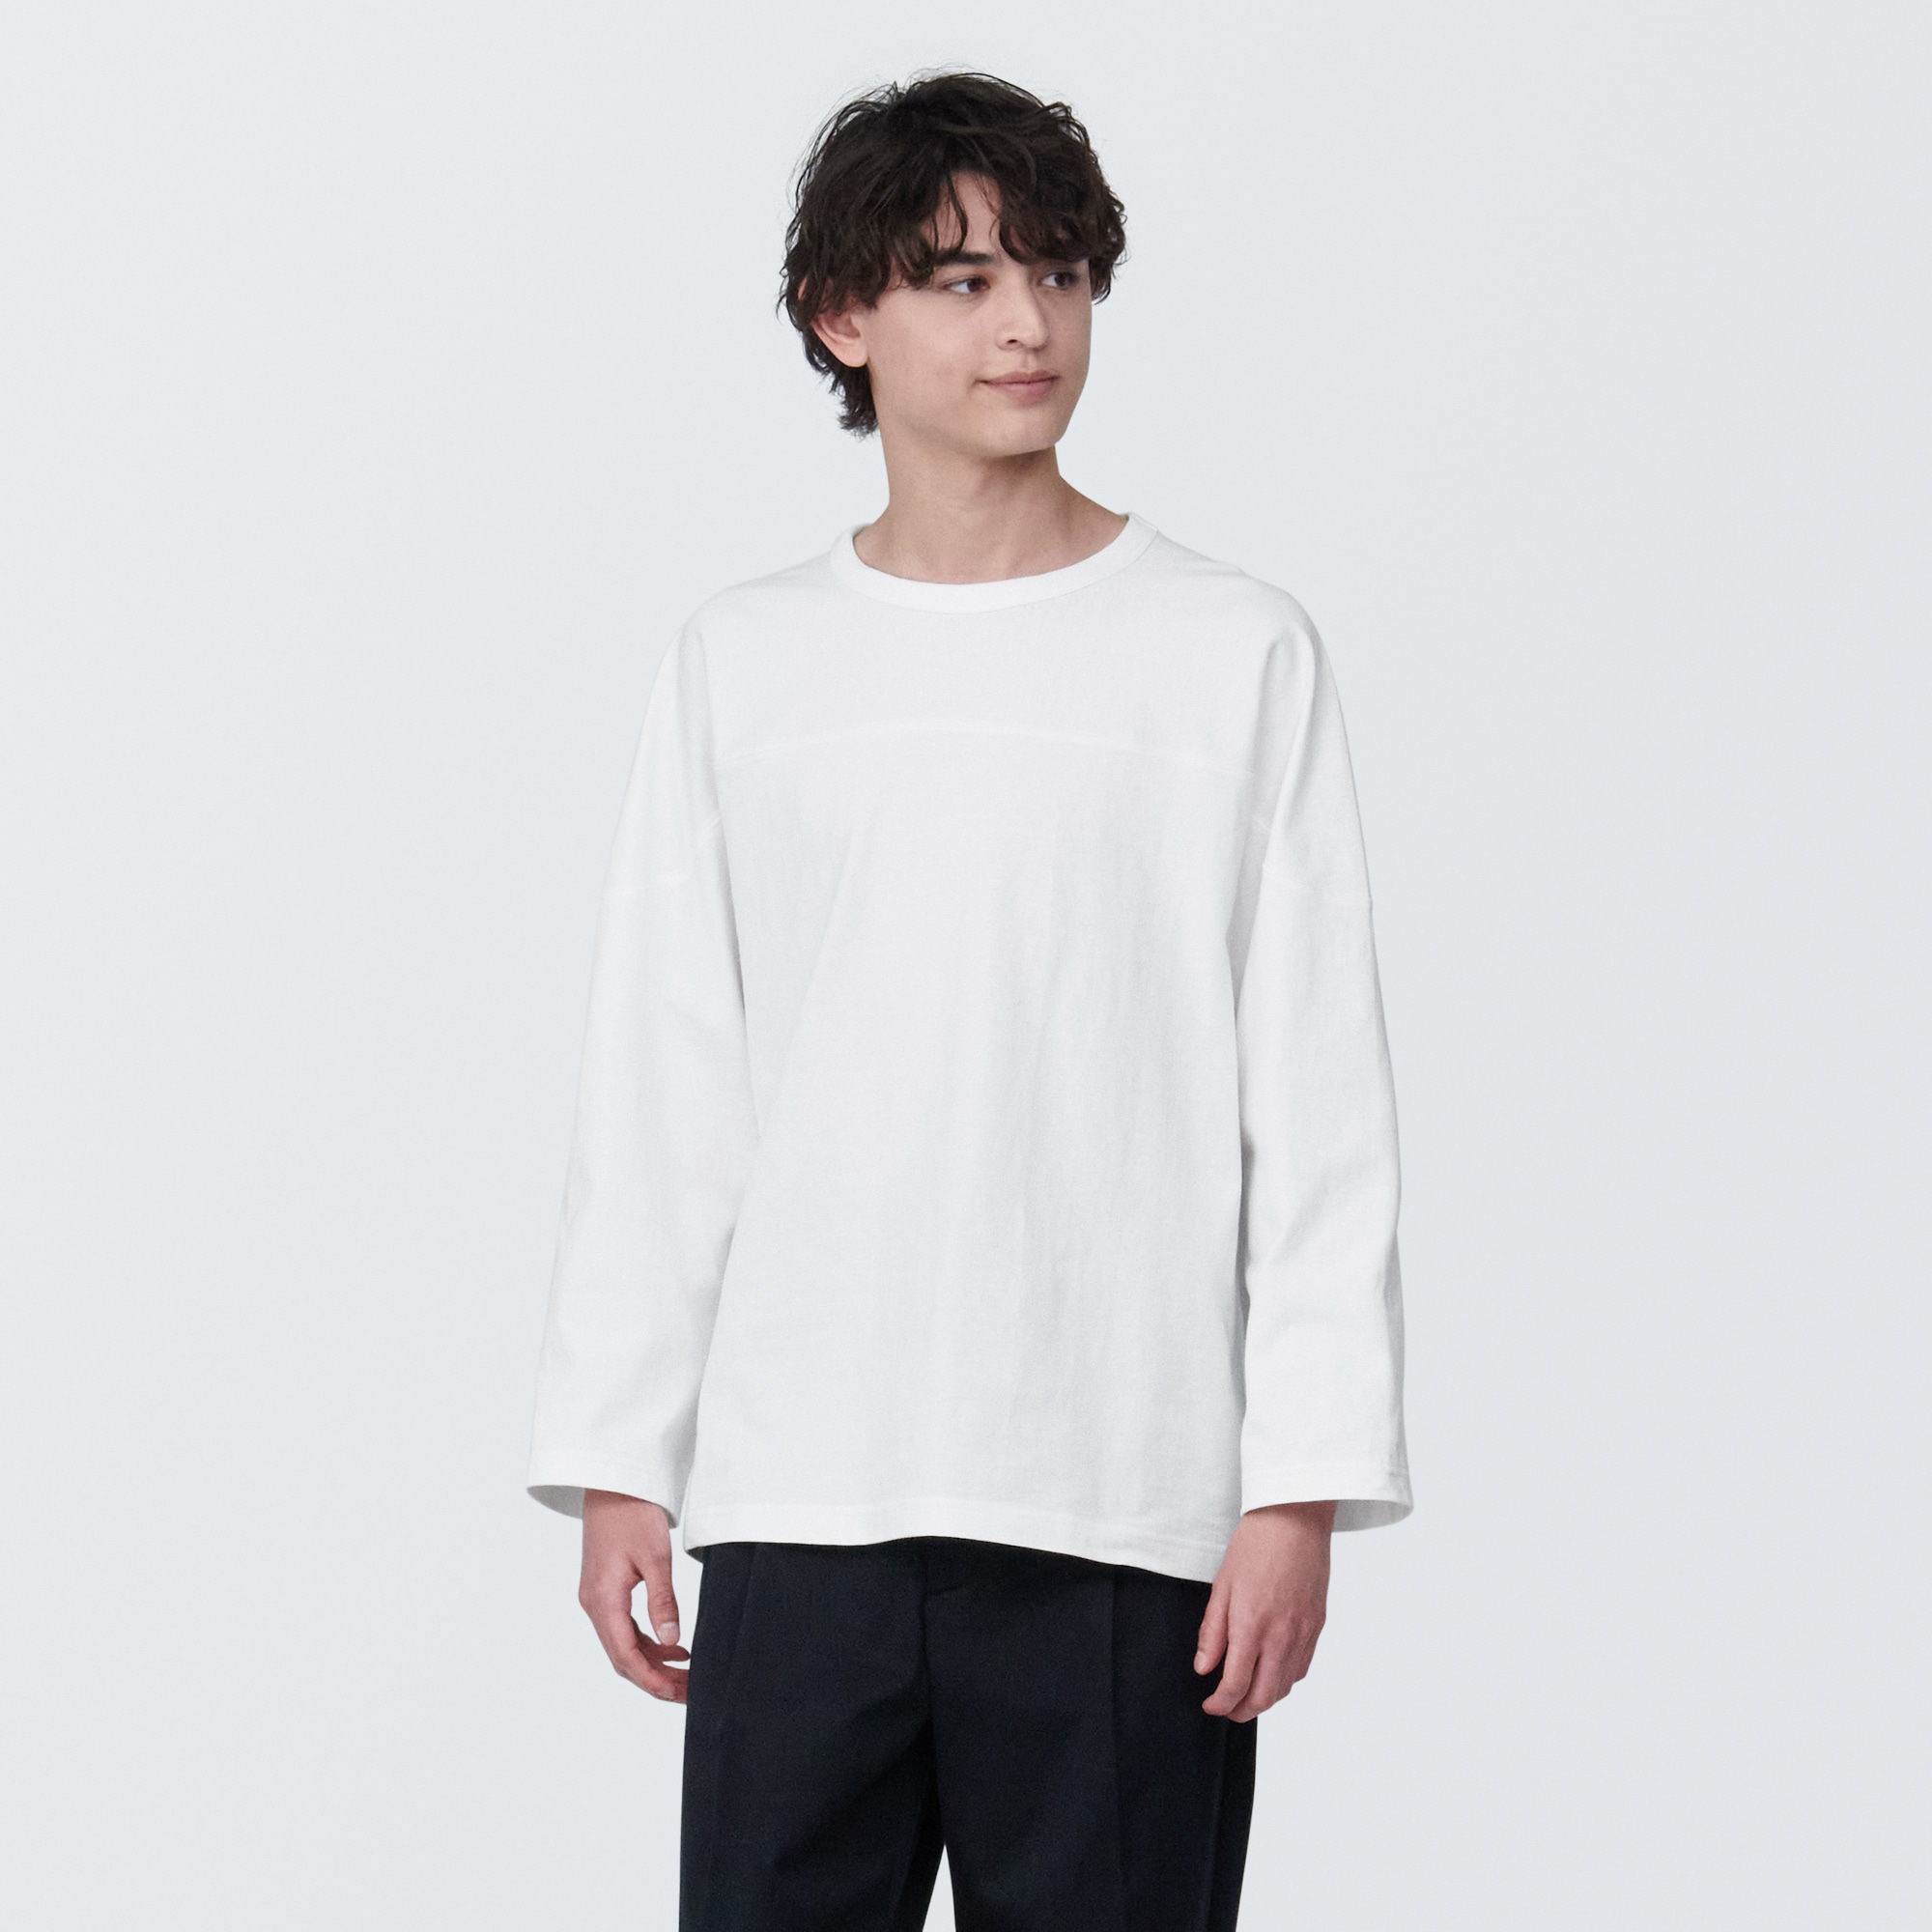 무인양품 일본 신사 워시트아웃 태번 9부 티셔츠